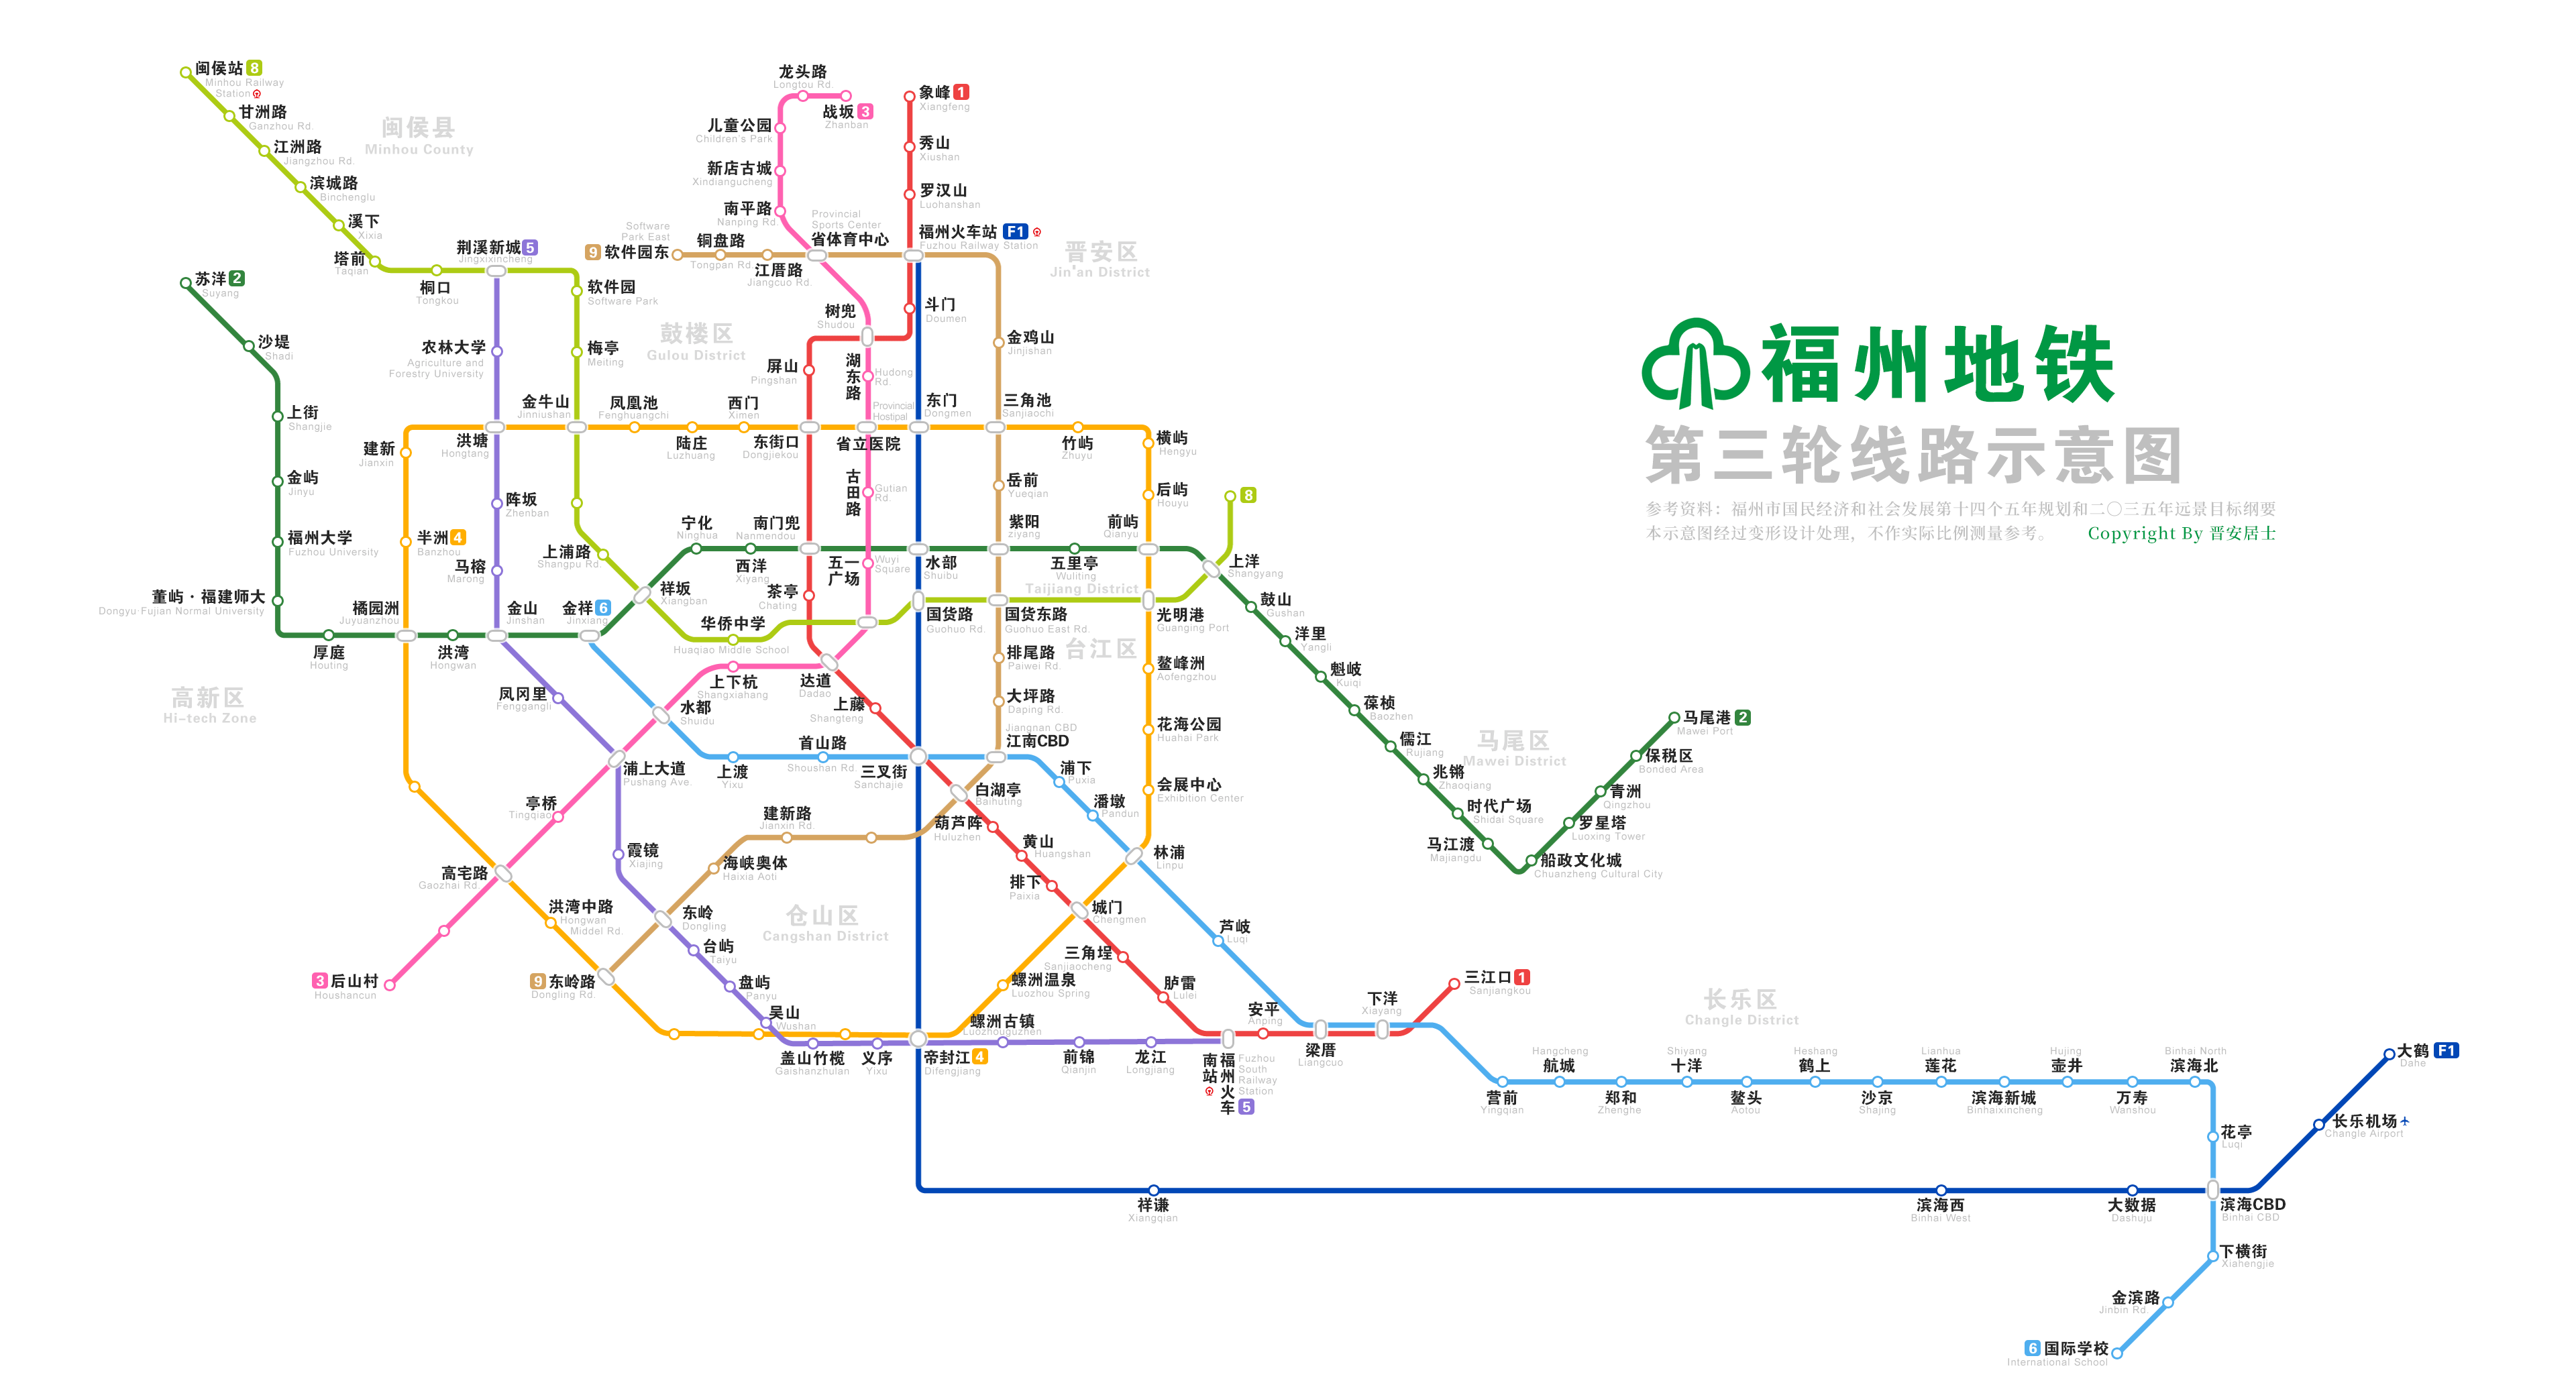 福州日前已经公布第三轮(期)地铁规划,计划2022年底前上报共计6条